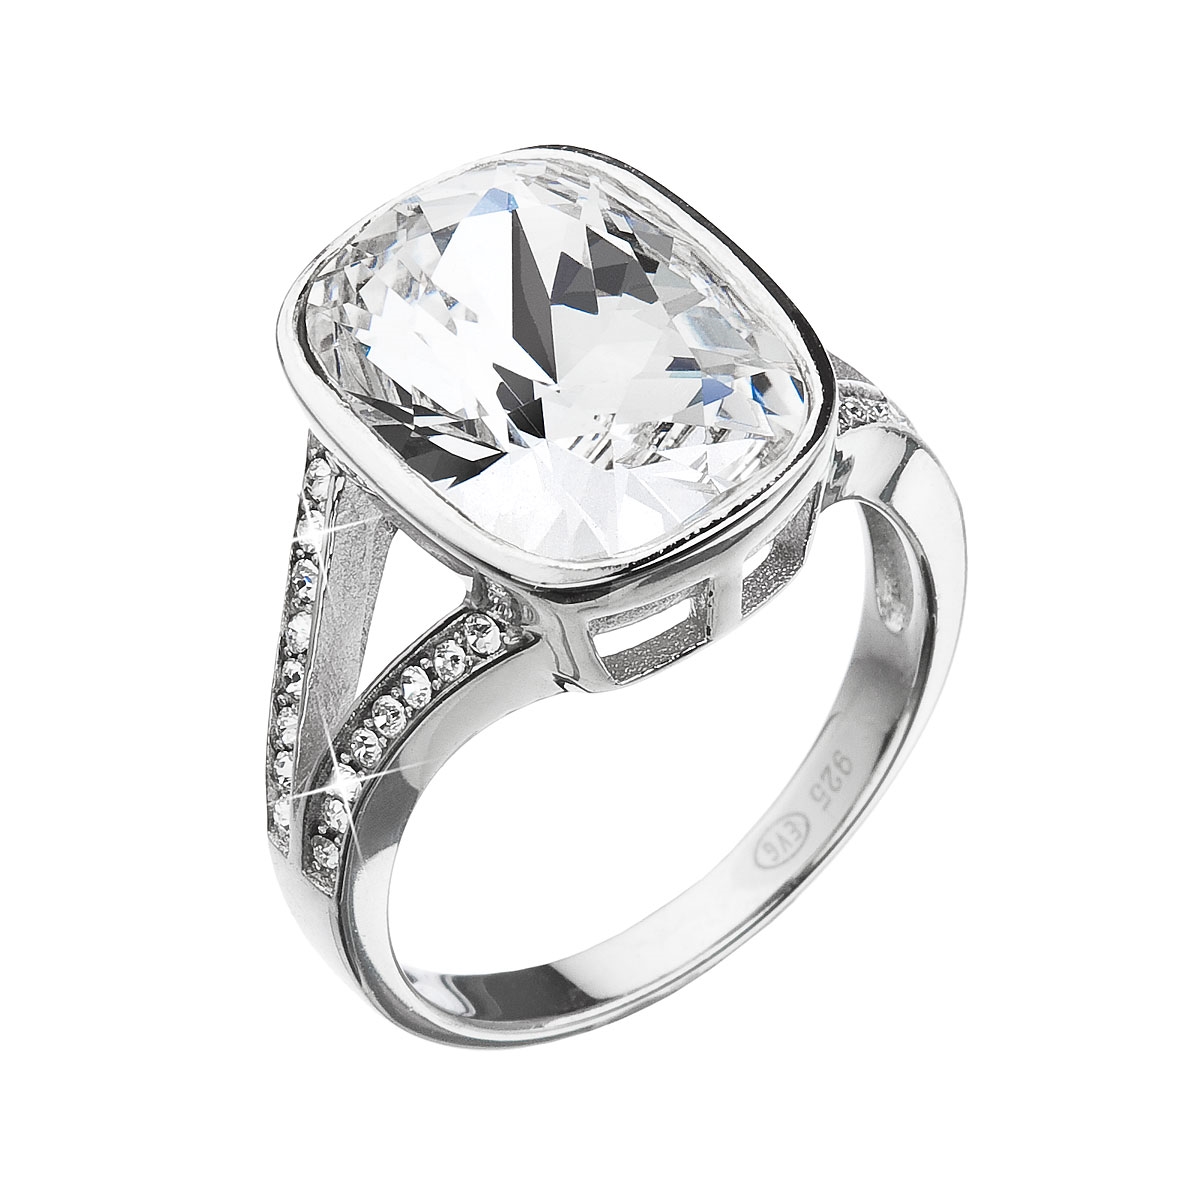 Strieborný prsteň s kryštálmi Swarovski biely obdĺžnik